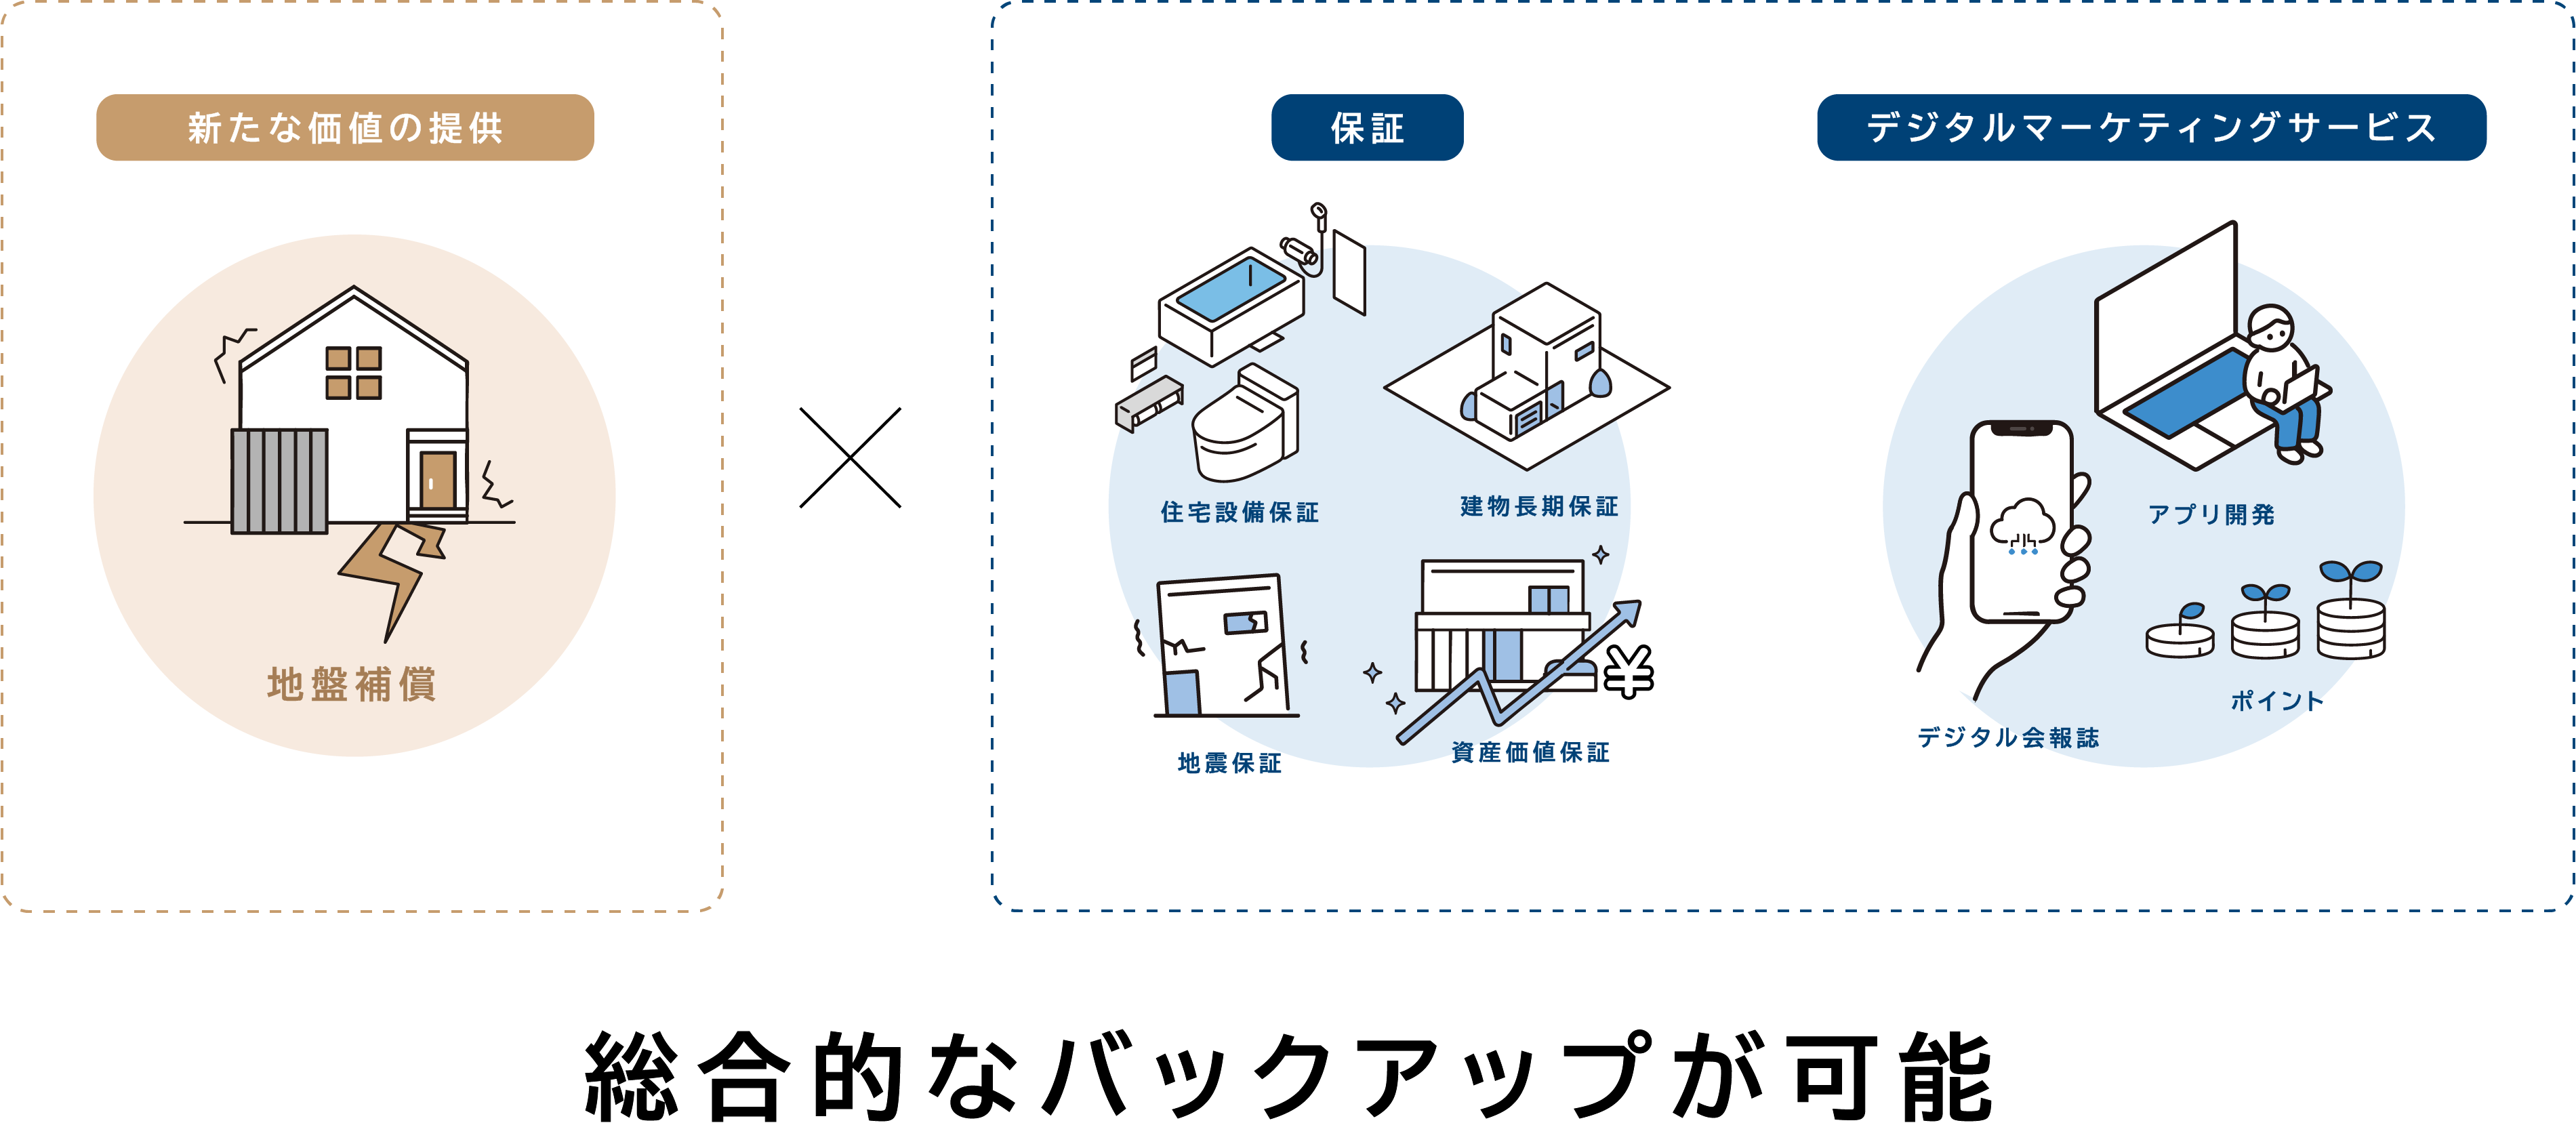 日本リビング保証、地盤ネット株式会社と業務提携「地盤補償」の取扱いスタート